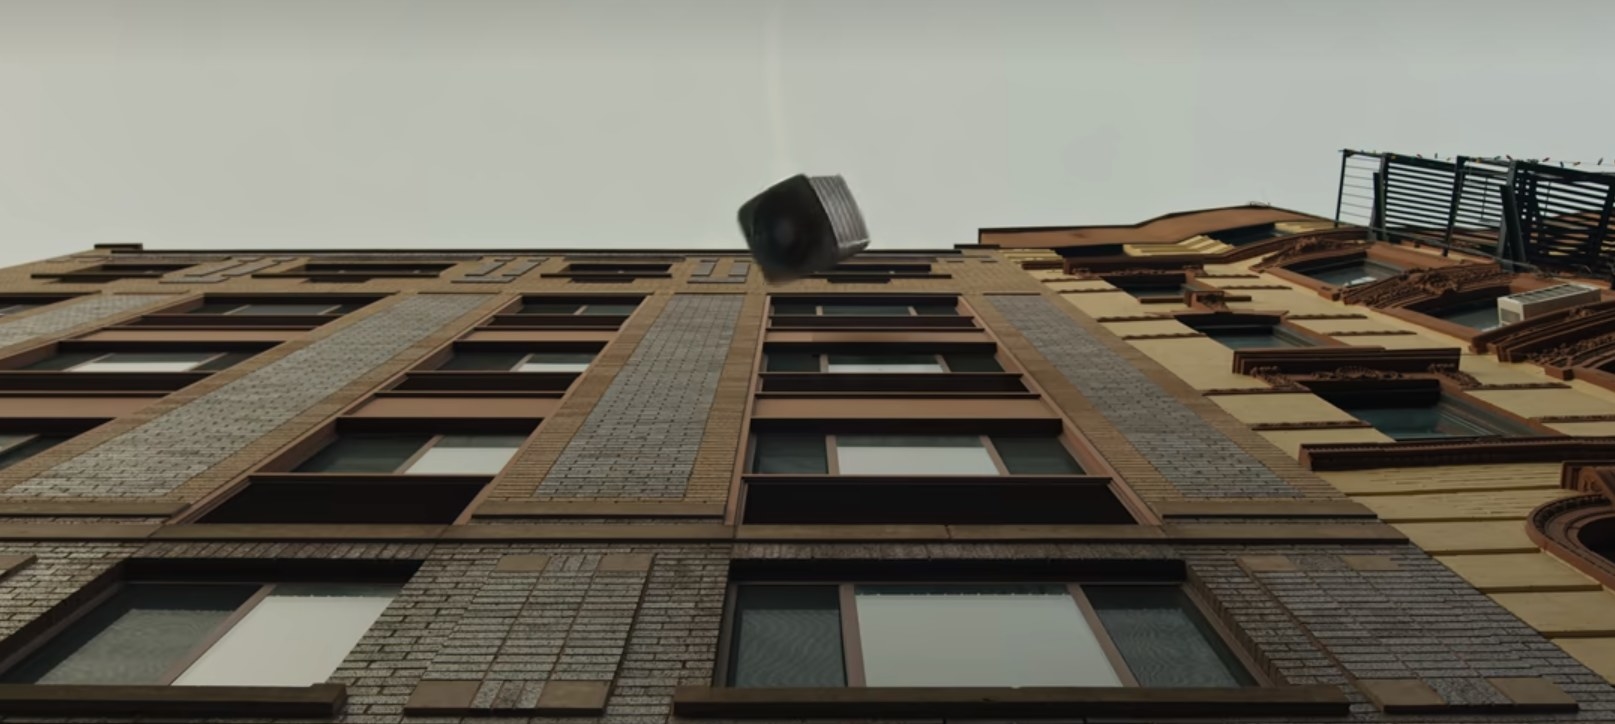 An A/C unit falls off a building towards the camera